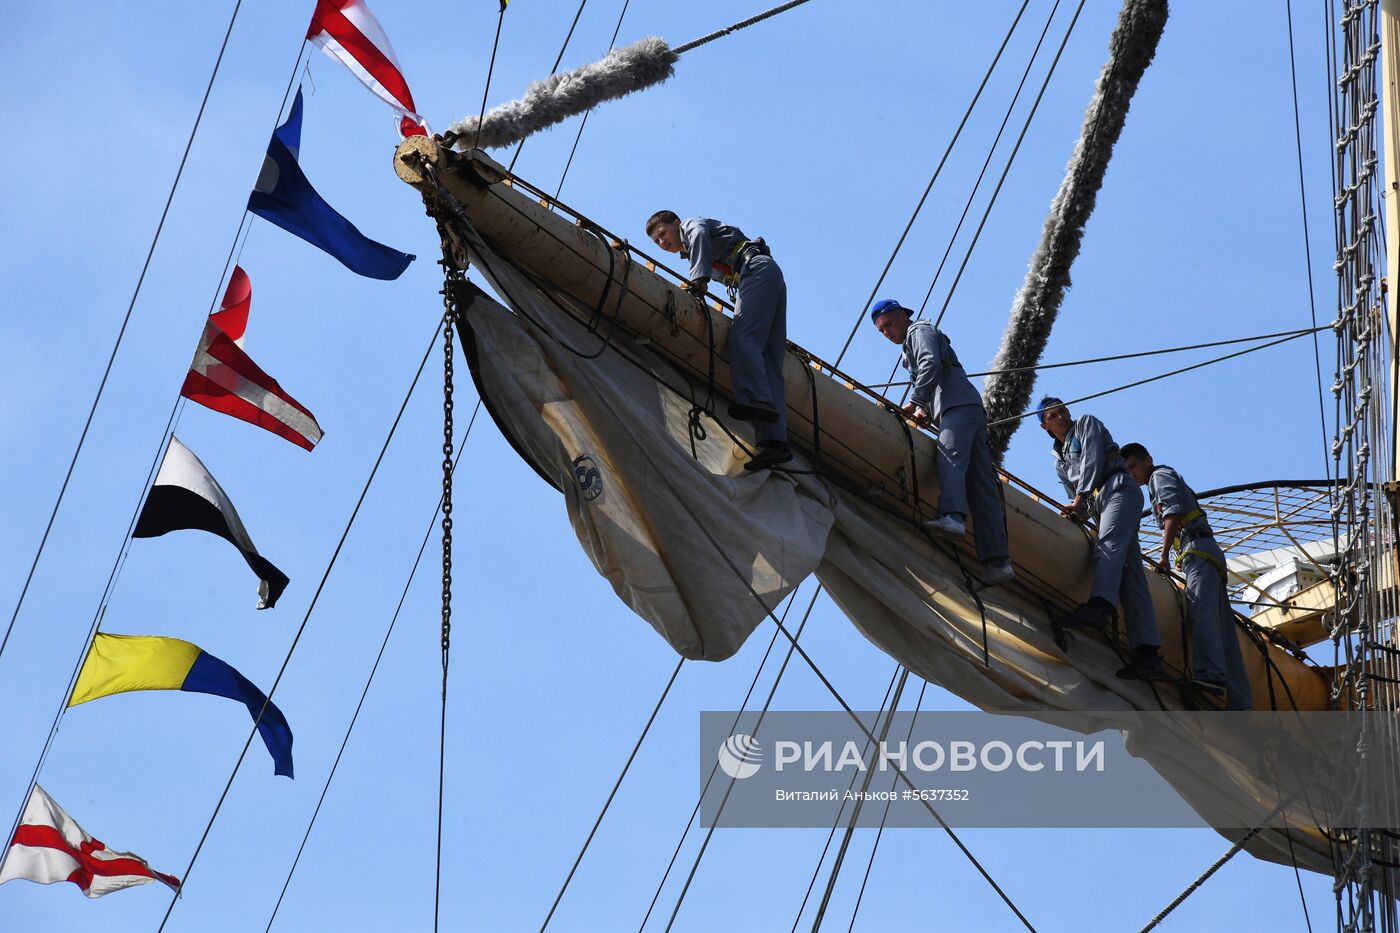 Парусники-участники  регаты в рамках ВЭФ покидают Владивосток